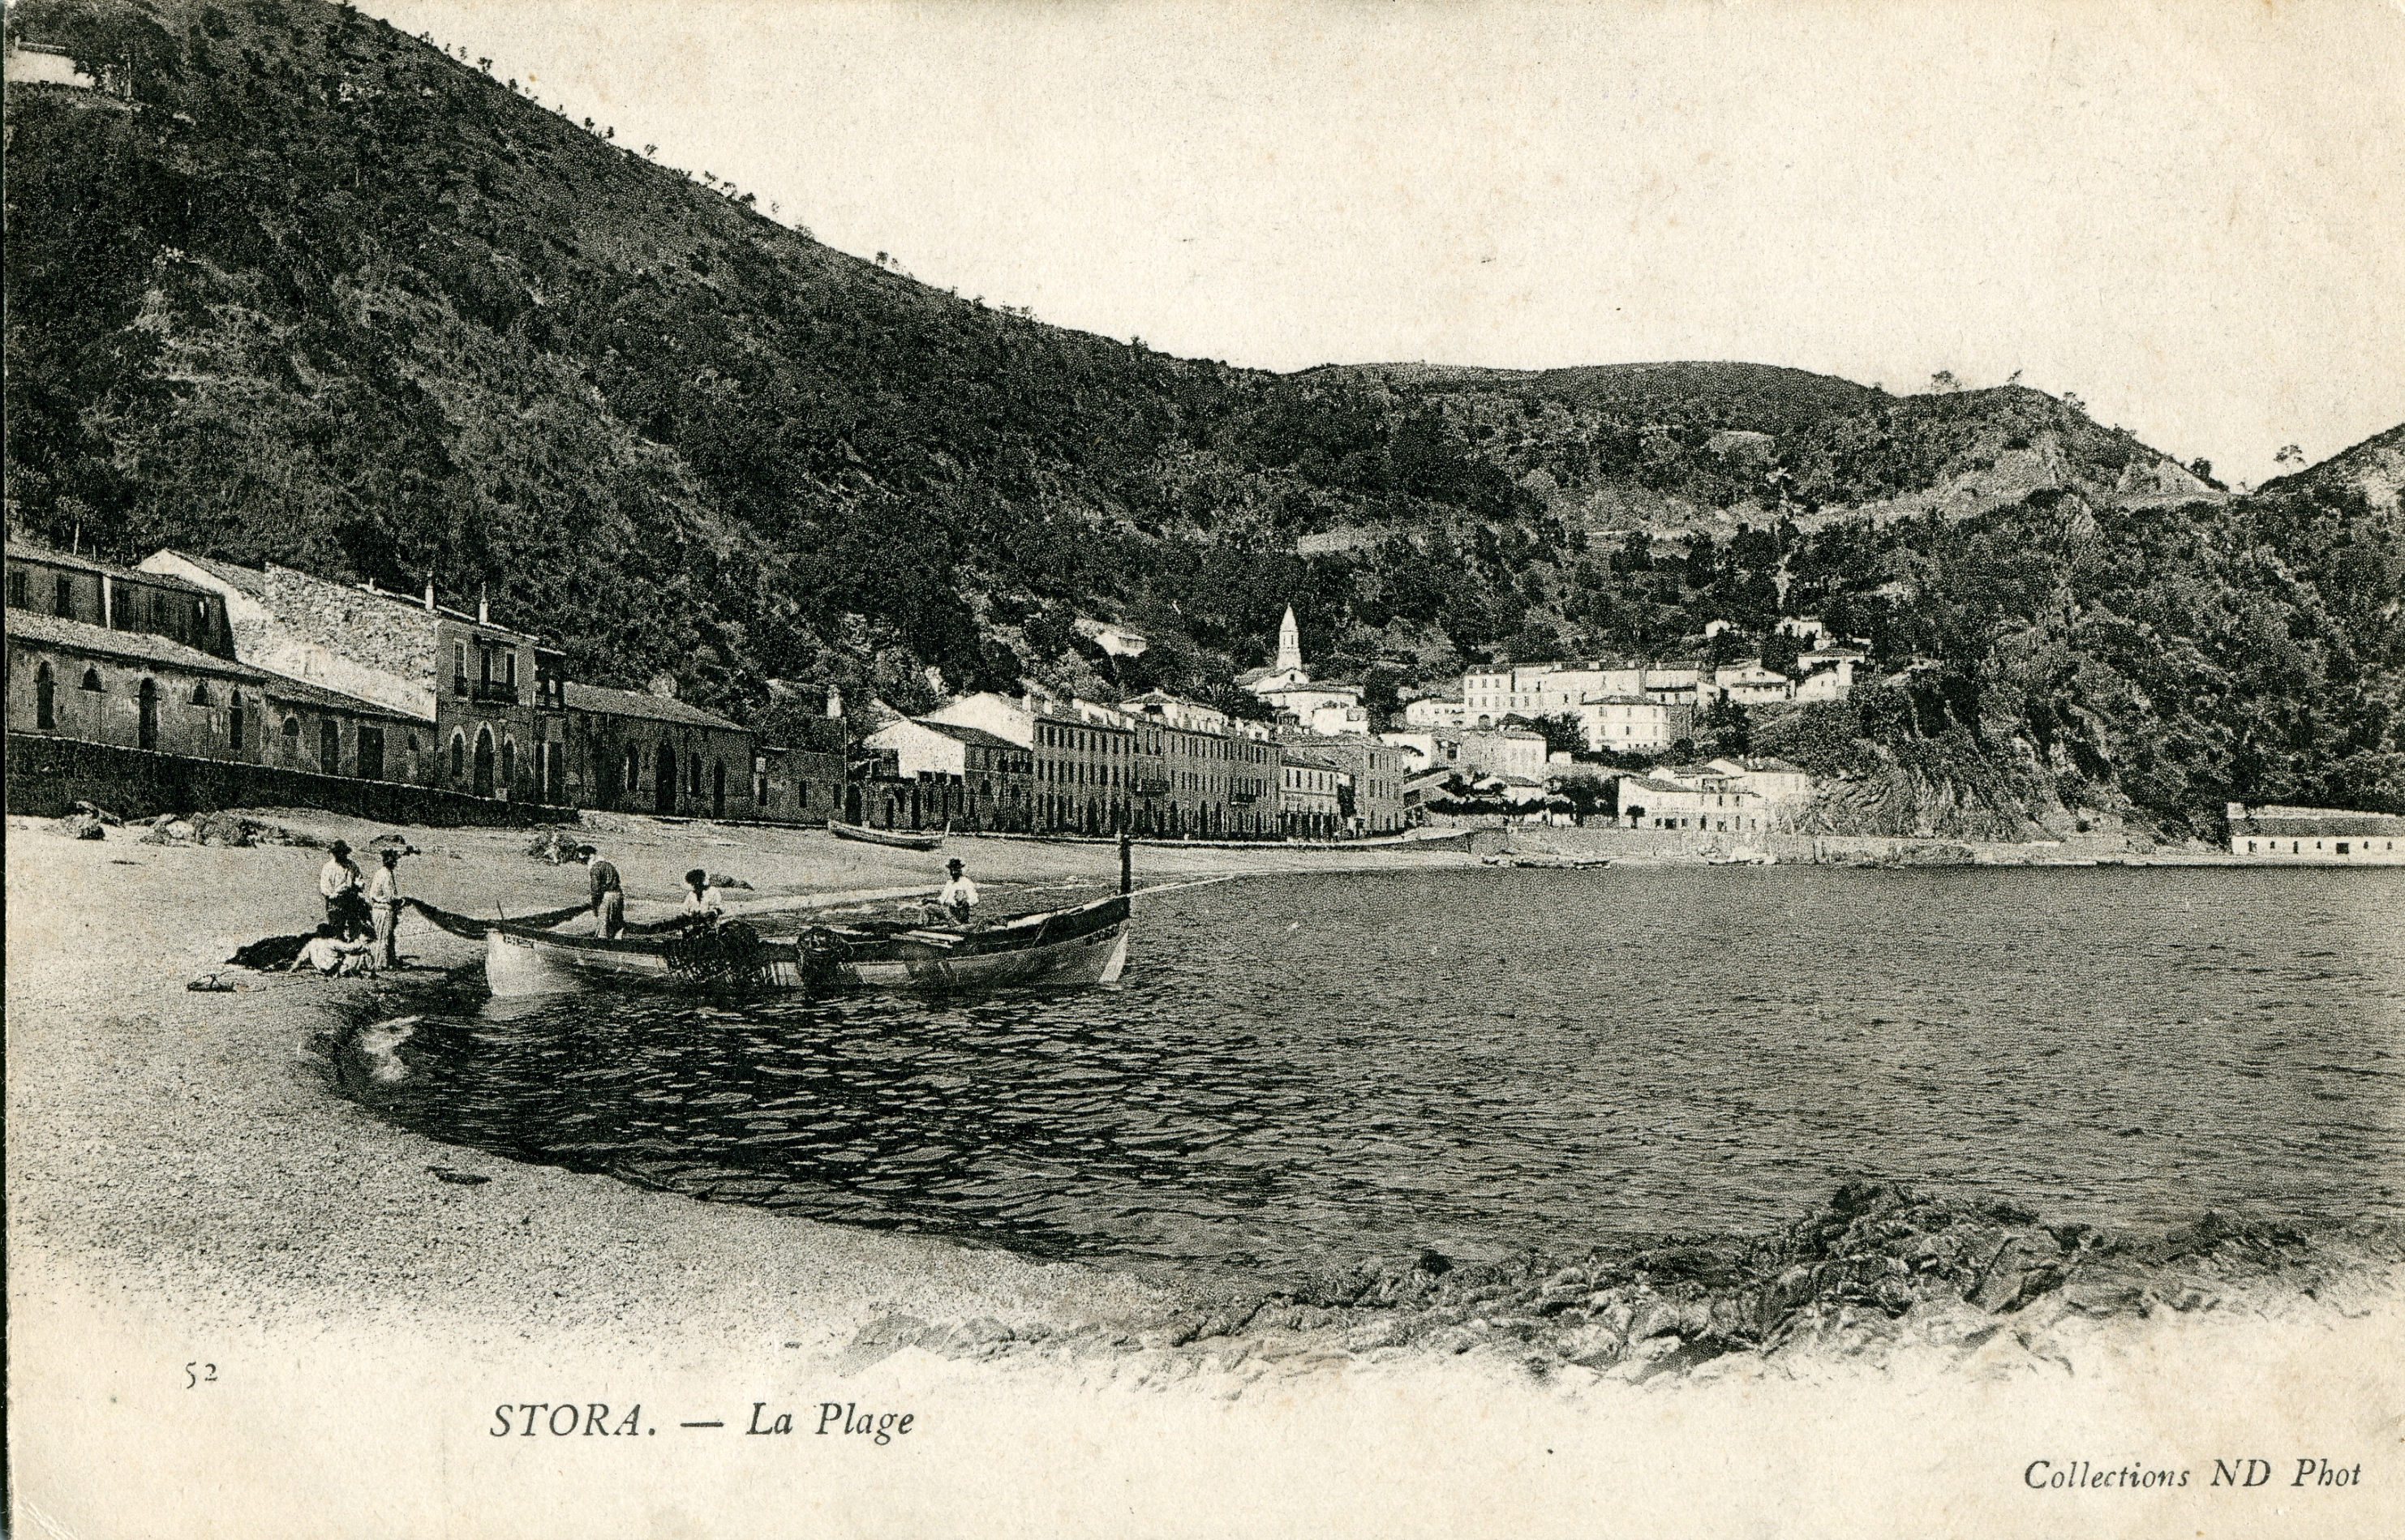 Cartolina raffigurante la spiaggia di Stora, in Algeria, prima meta dell’emigrazione della famiglia Lauro. 